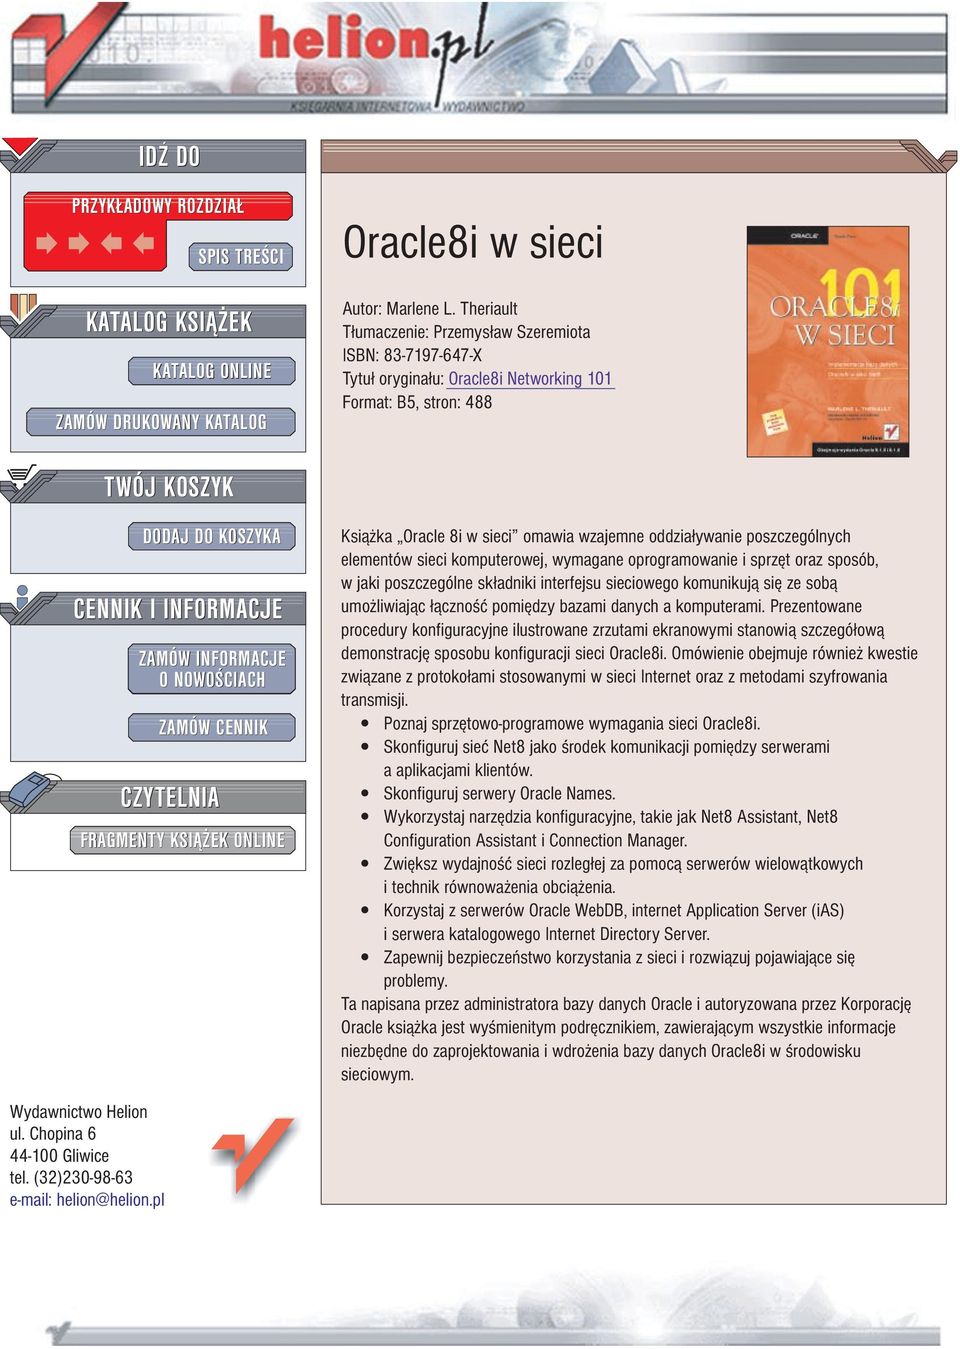 NOWO CIACH ZAMÓW CENNIK CZYTELNIA FRAGMENTY KSI EK ONLINE Ksi¹ ka Oracle 8i w sieci omawia wzajemne oddzia³ywanie poszczególnych elementów sieci komputerowej, wymagane oprogramowanie i sprzêt oraz